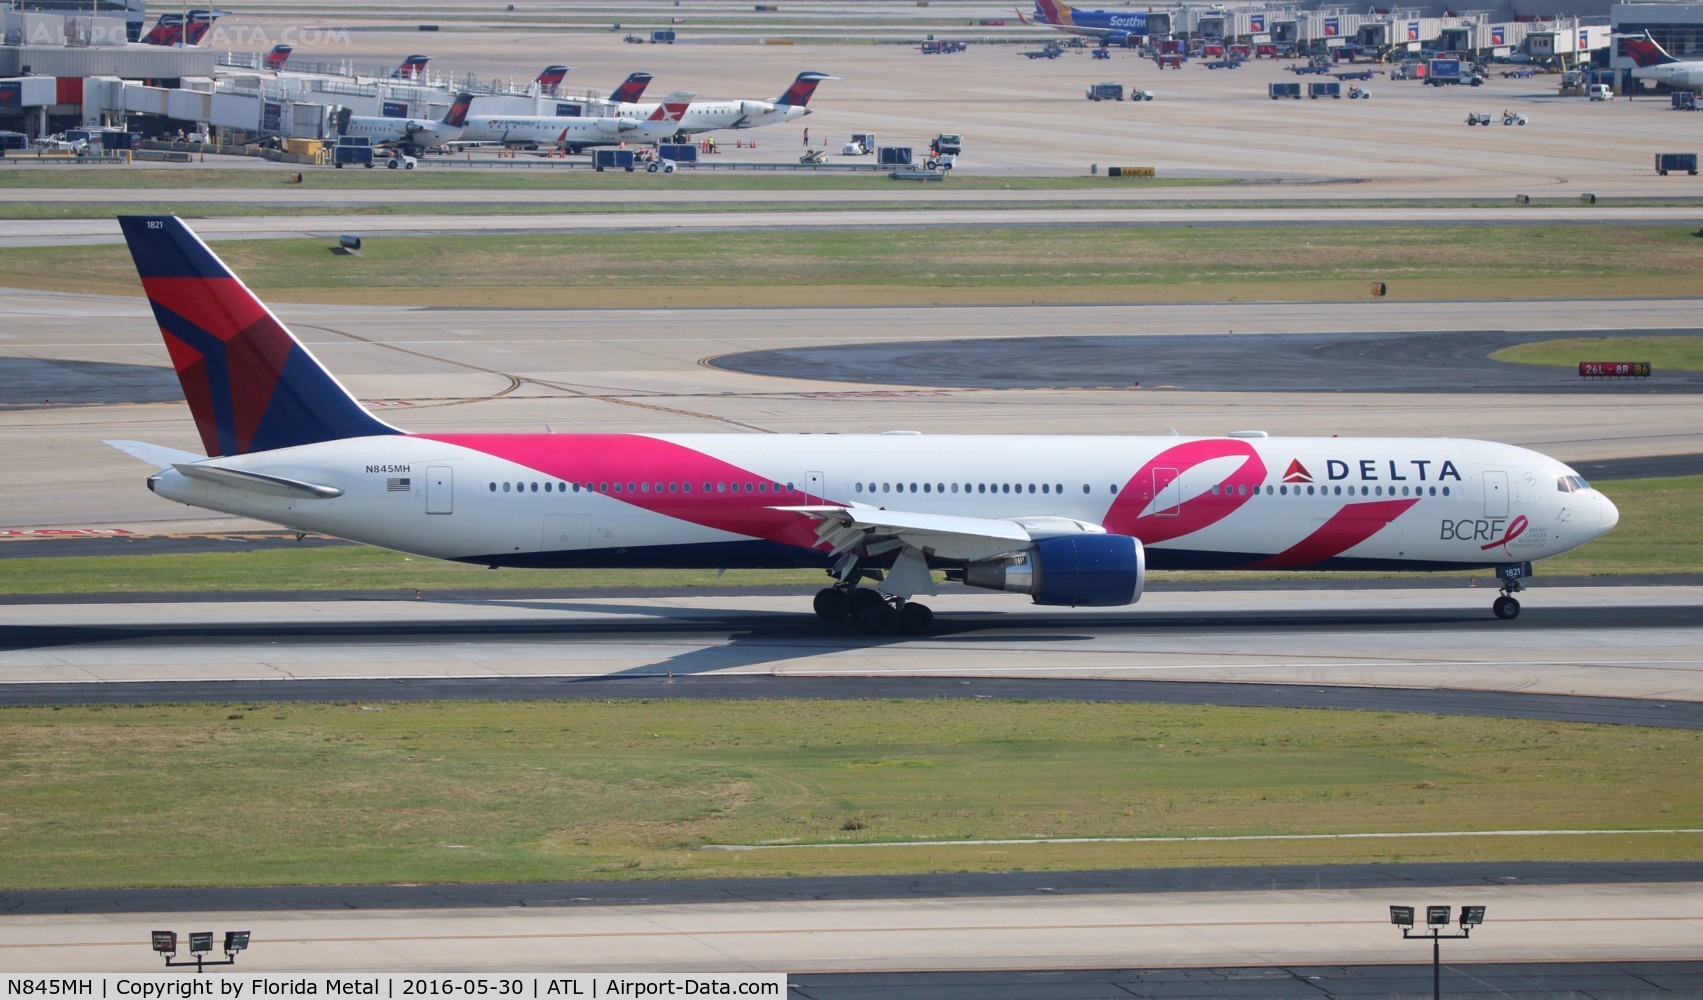 N845MH, 2002 Boeing 767-432/ER C/N 29719, Delta Breast Cancer plane